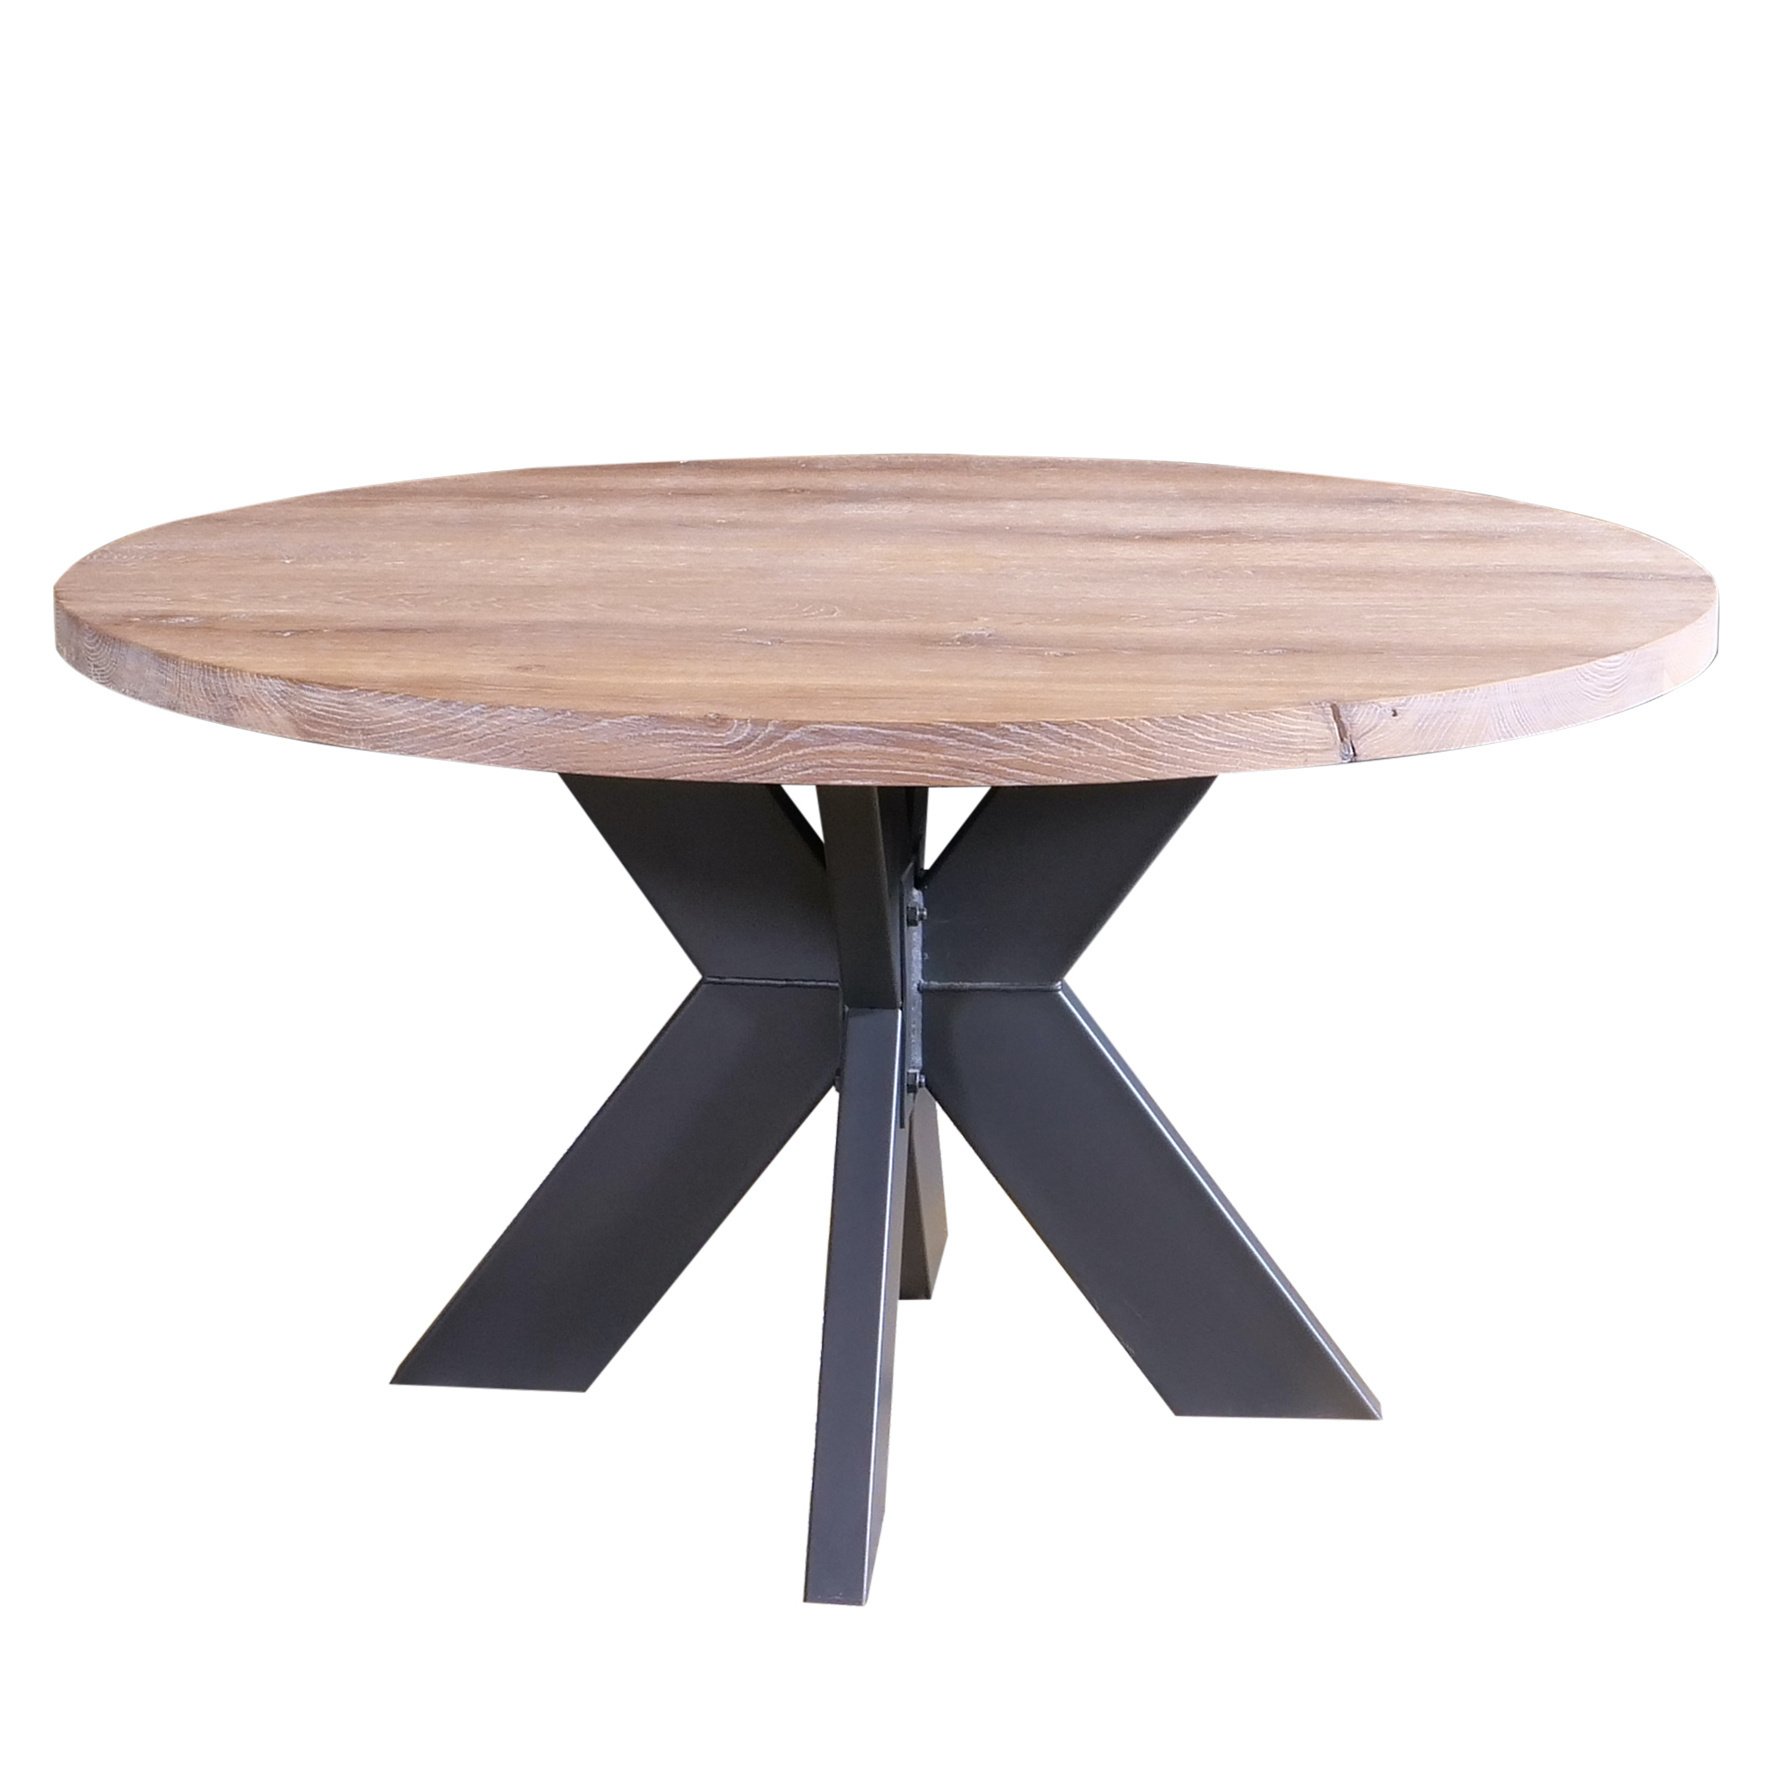  Tischplatte (Bistro) Wildeiche rund - 4 cm dick - Asteiche (rustikal) - Eiche Tischplatte rund massiv - Verleimt & künstlich getrocknet (HF 8-12%)